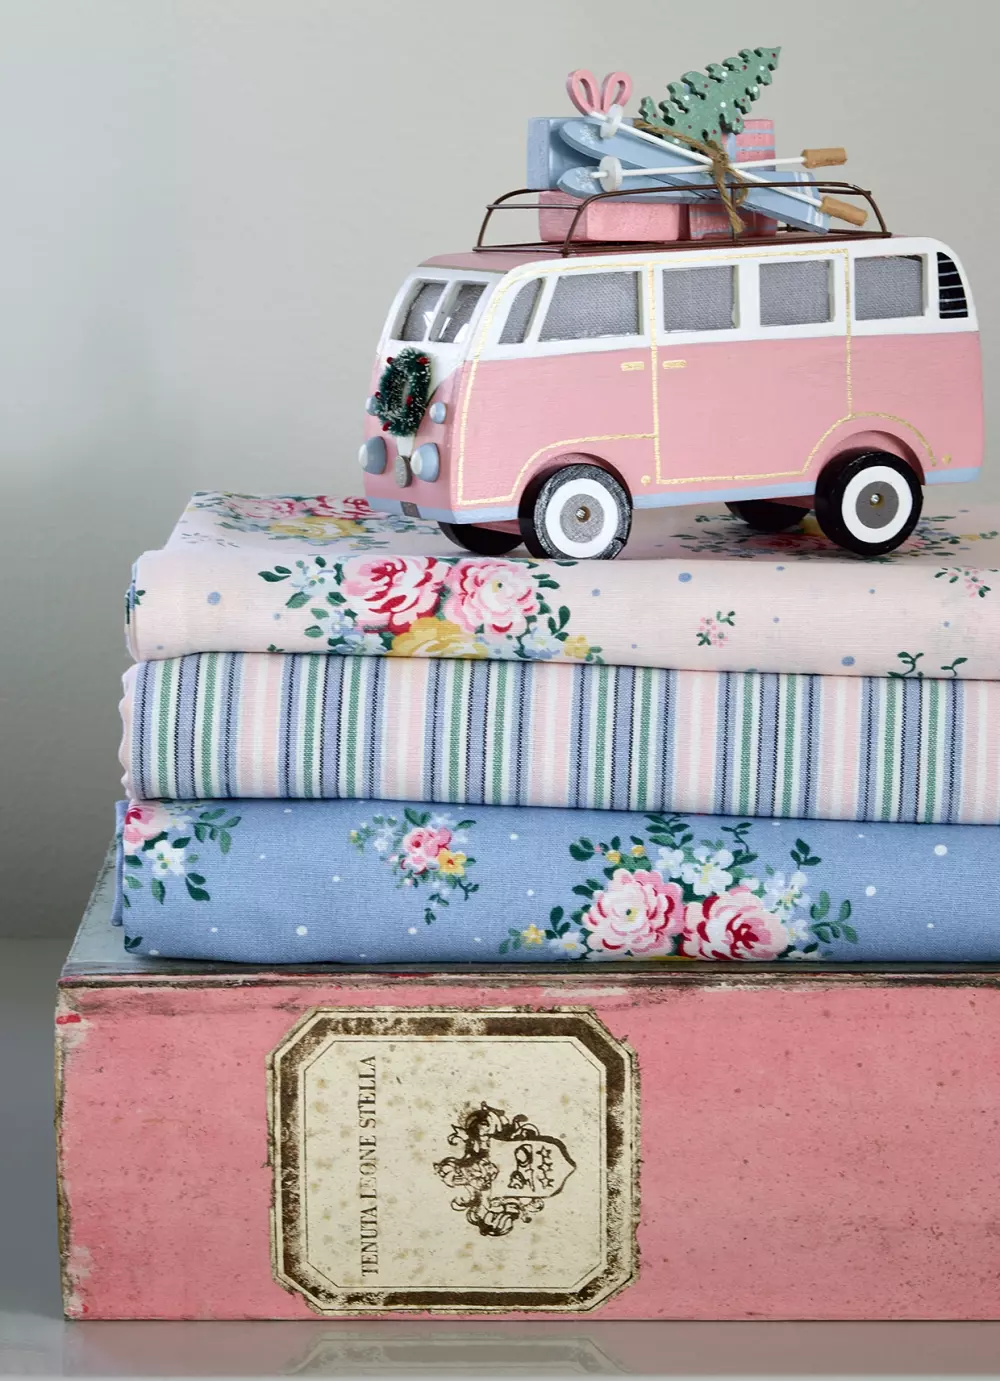 Kjøkkenhåndkle Anine Pink 50x70, 5707463467474, COTTEAANI1512, Tekstil, Kjøkkentekstiler, GreenGate, Tea towel Anine pink